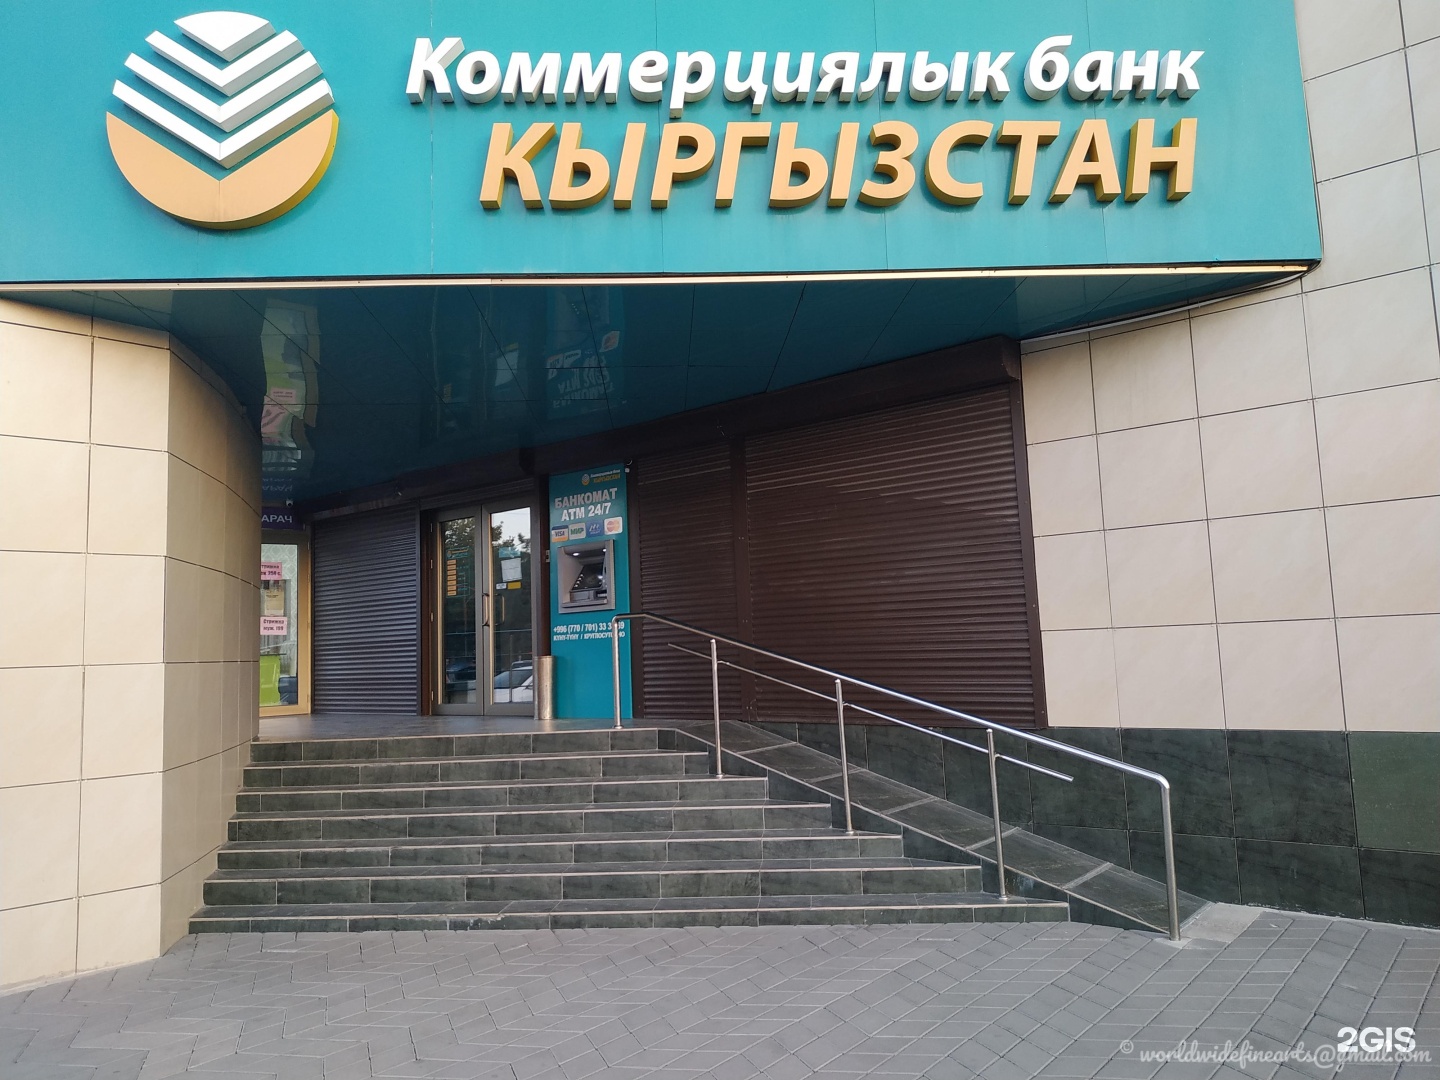 Bank kyrgyzstan. Банк Кыргызстан. Коммерциялык банк. Кыргыз коммерческий банк. Коммерческий банк Кыргызстан MBANK.